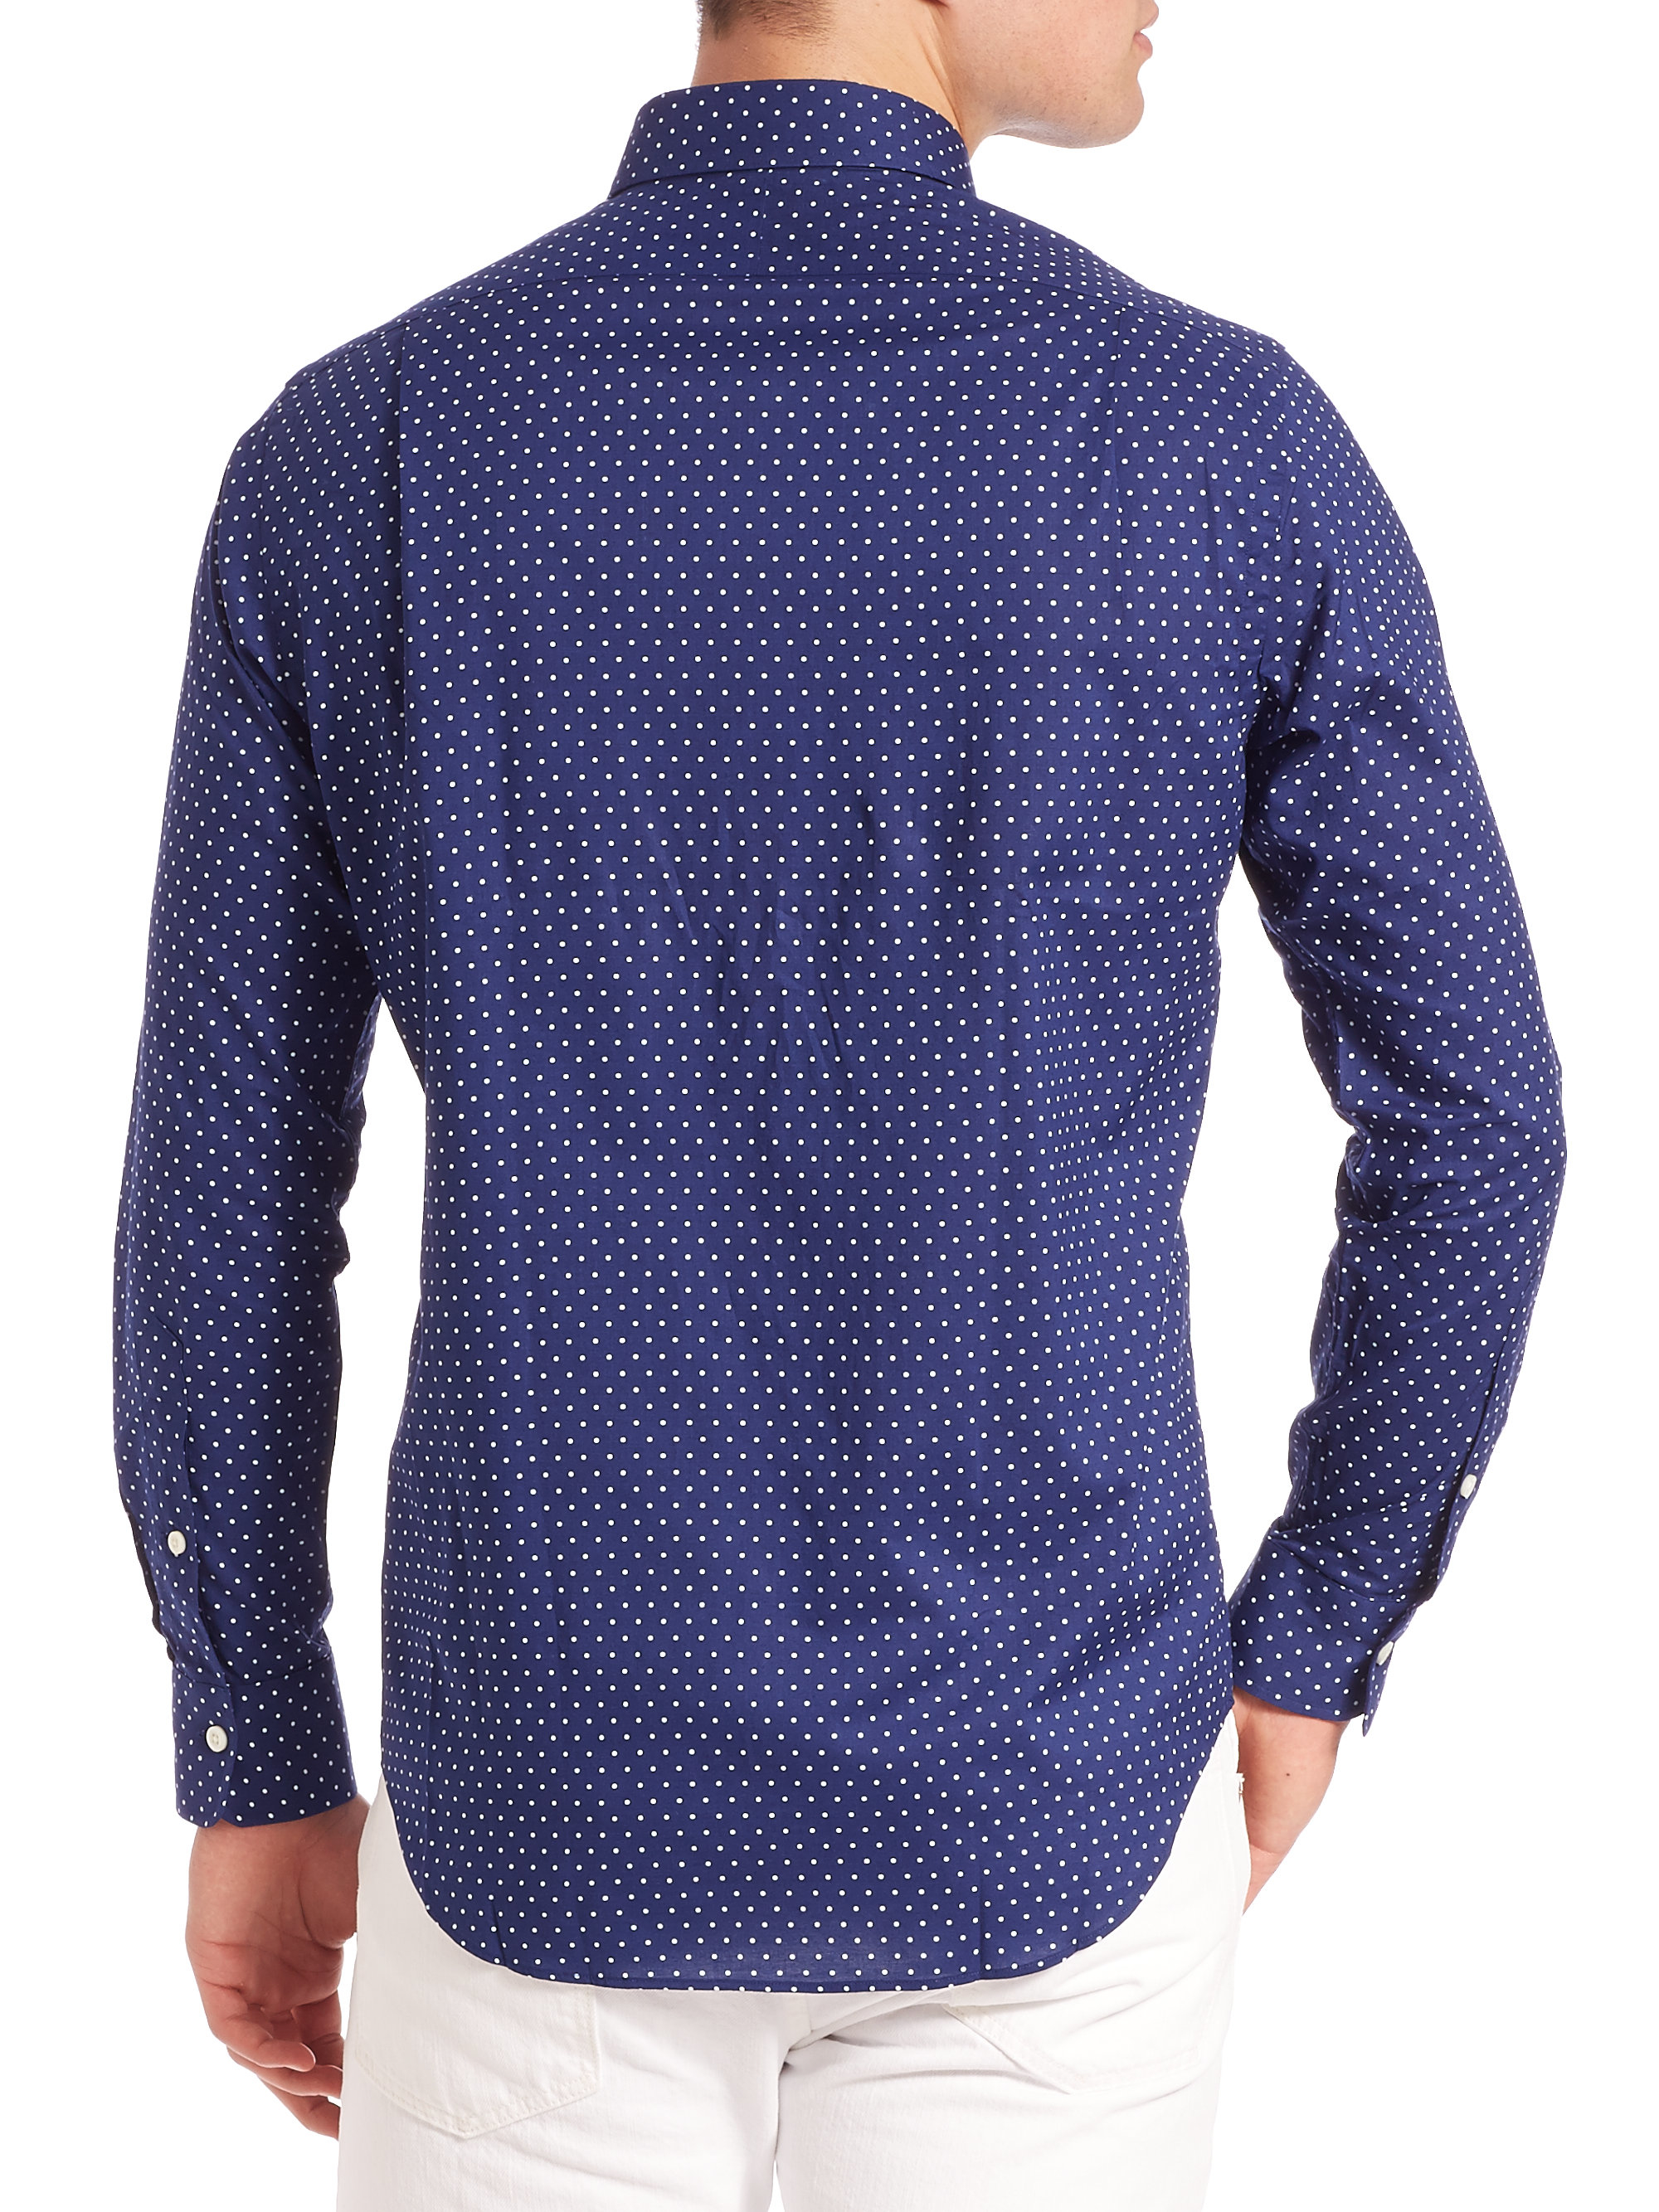 Lyst - Polo Ralph Lauren Polka-dot Estate Shirt in Blue for Men